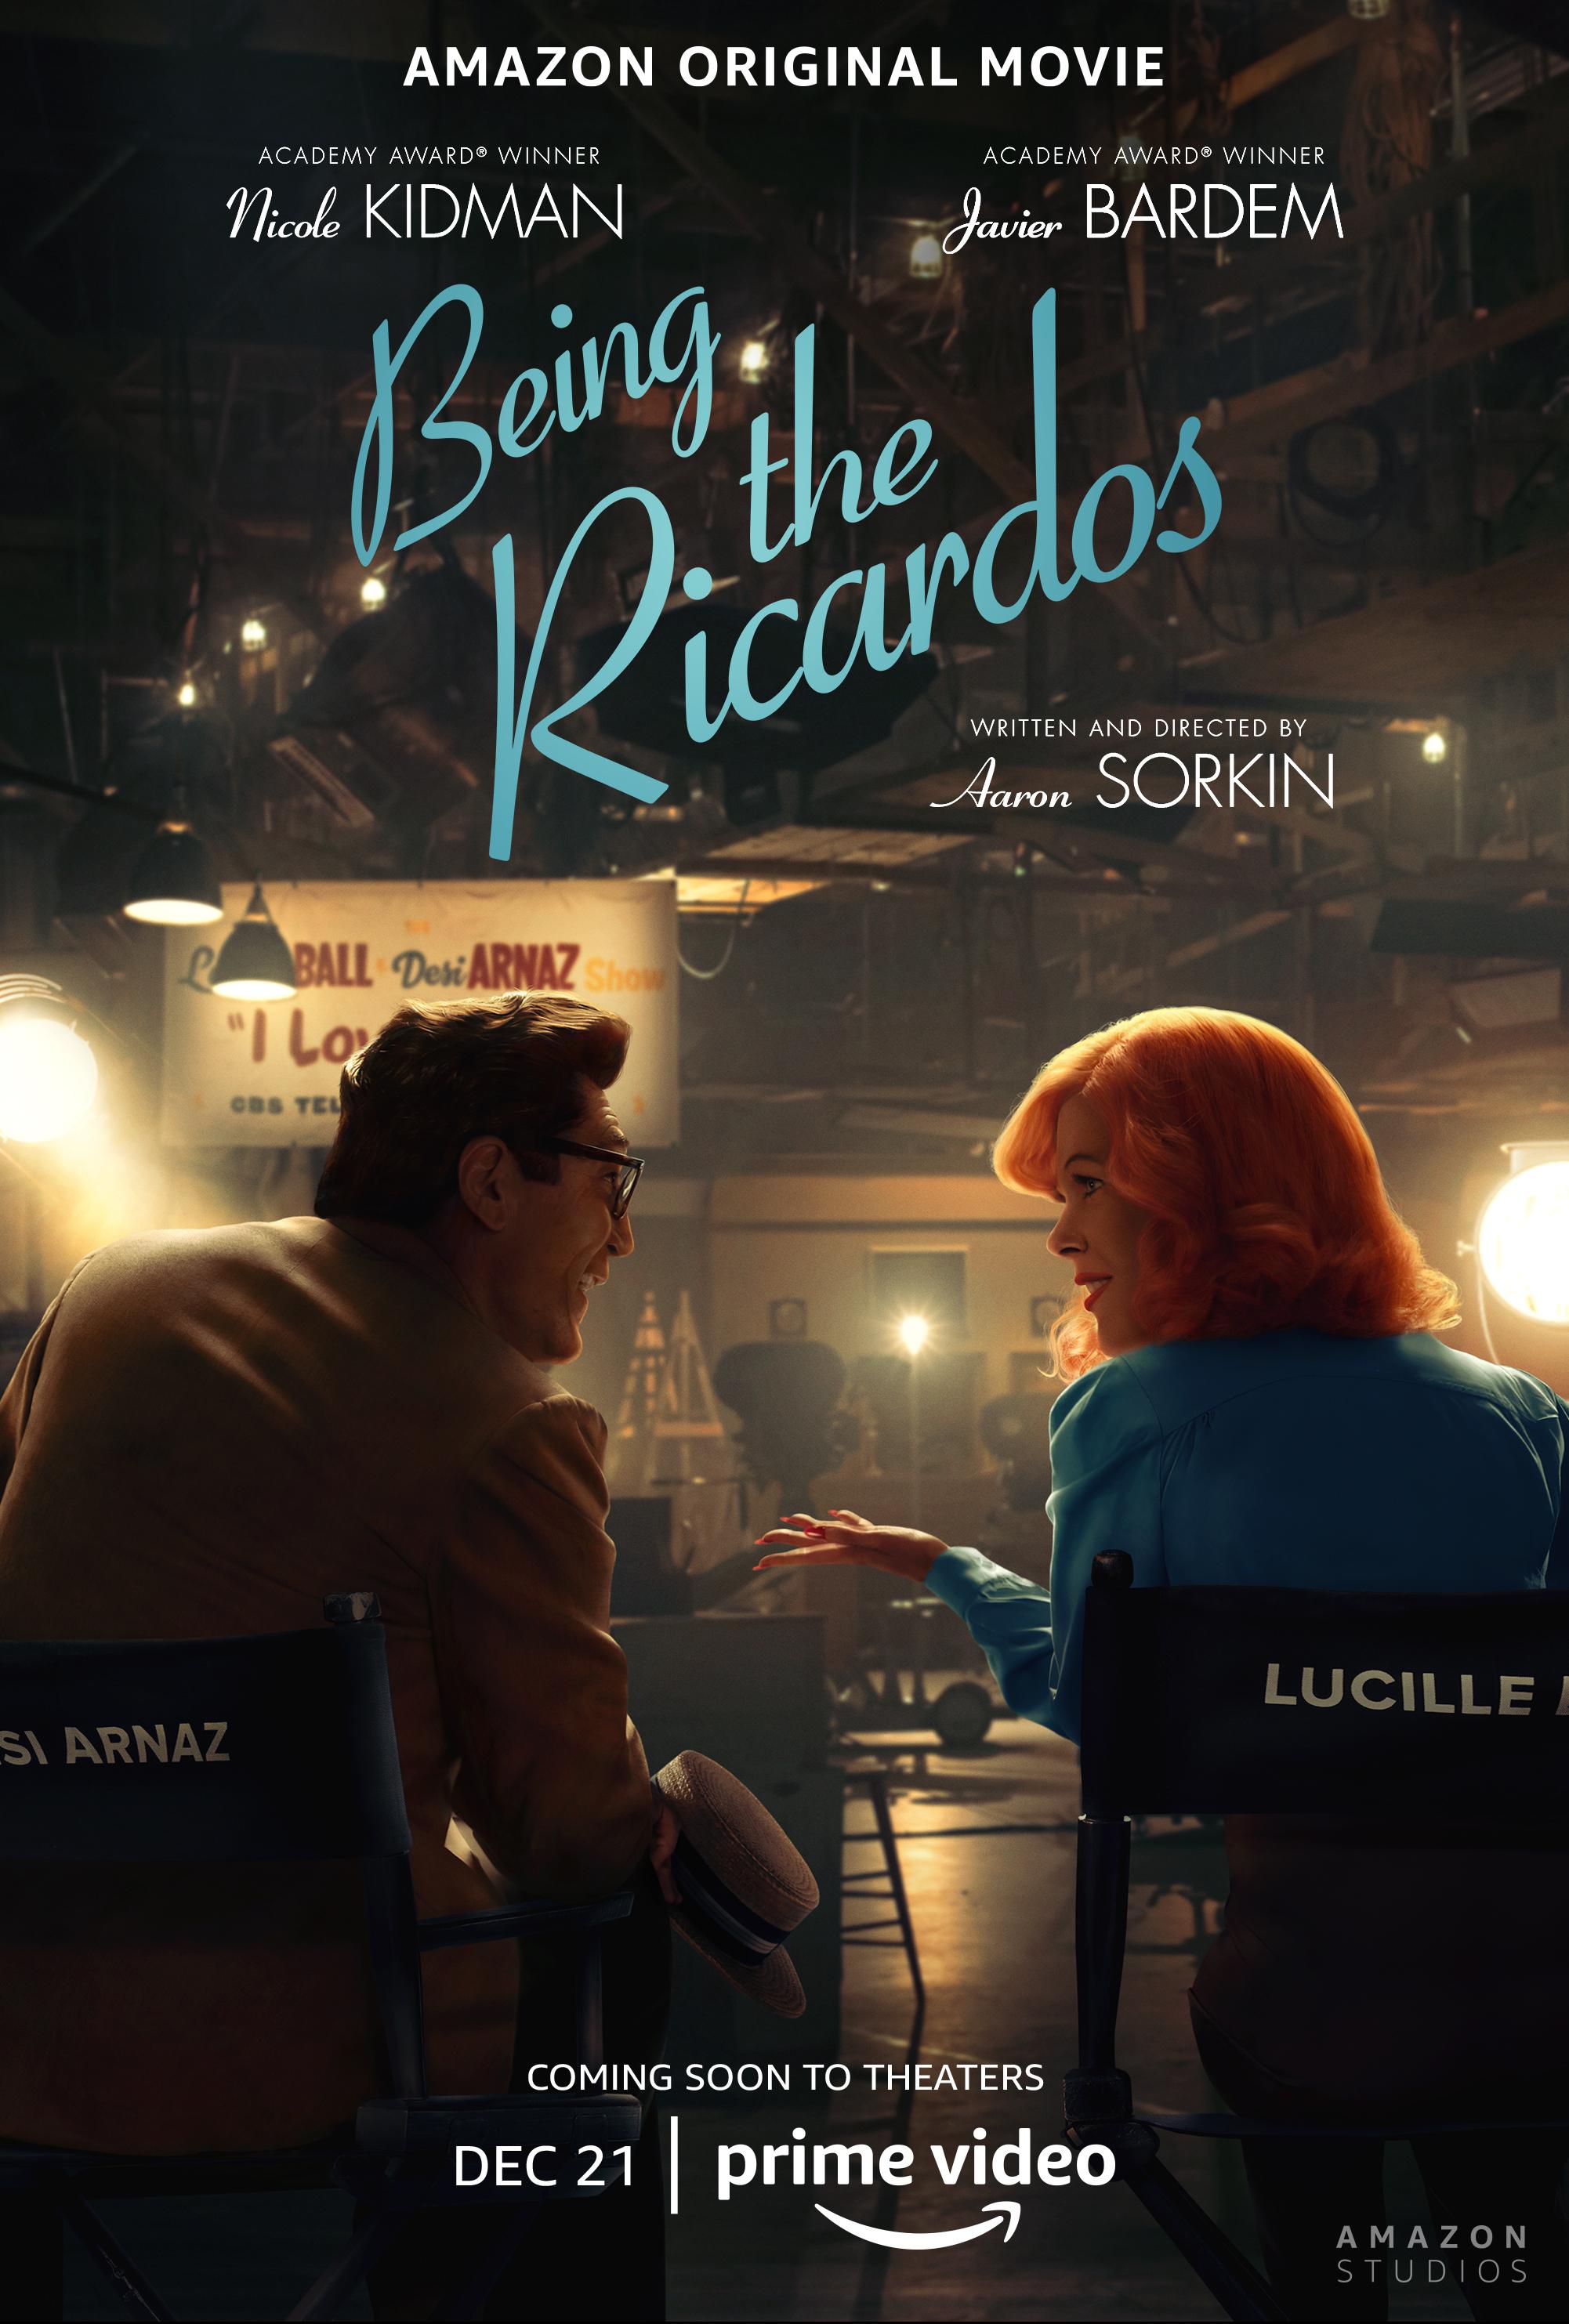 Постер фильма В роли Рикардо | Being the Ricardos